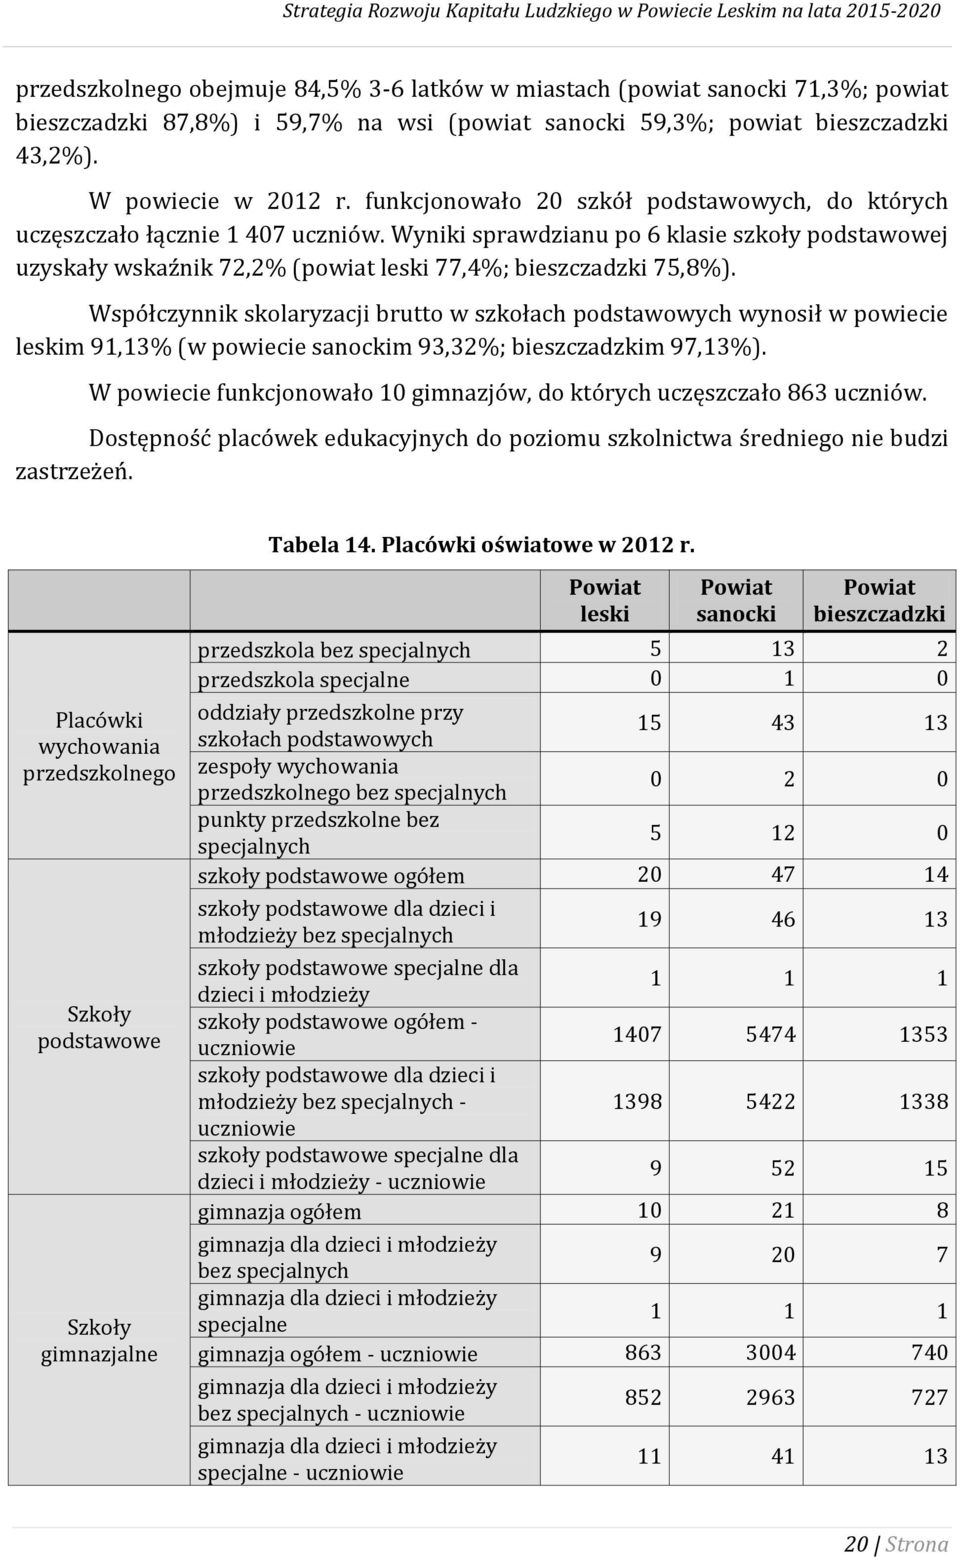 Współczynnik skolaryzacji brutto w szkołach podstawowych wynosił w powiecie leskim 91,13% (w powiecie sanockim 93,32%; bieszczadzkim 97,13%).